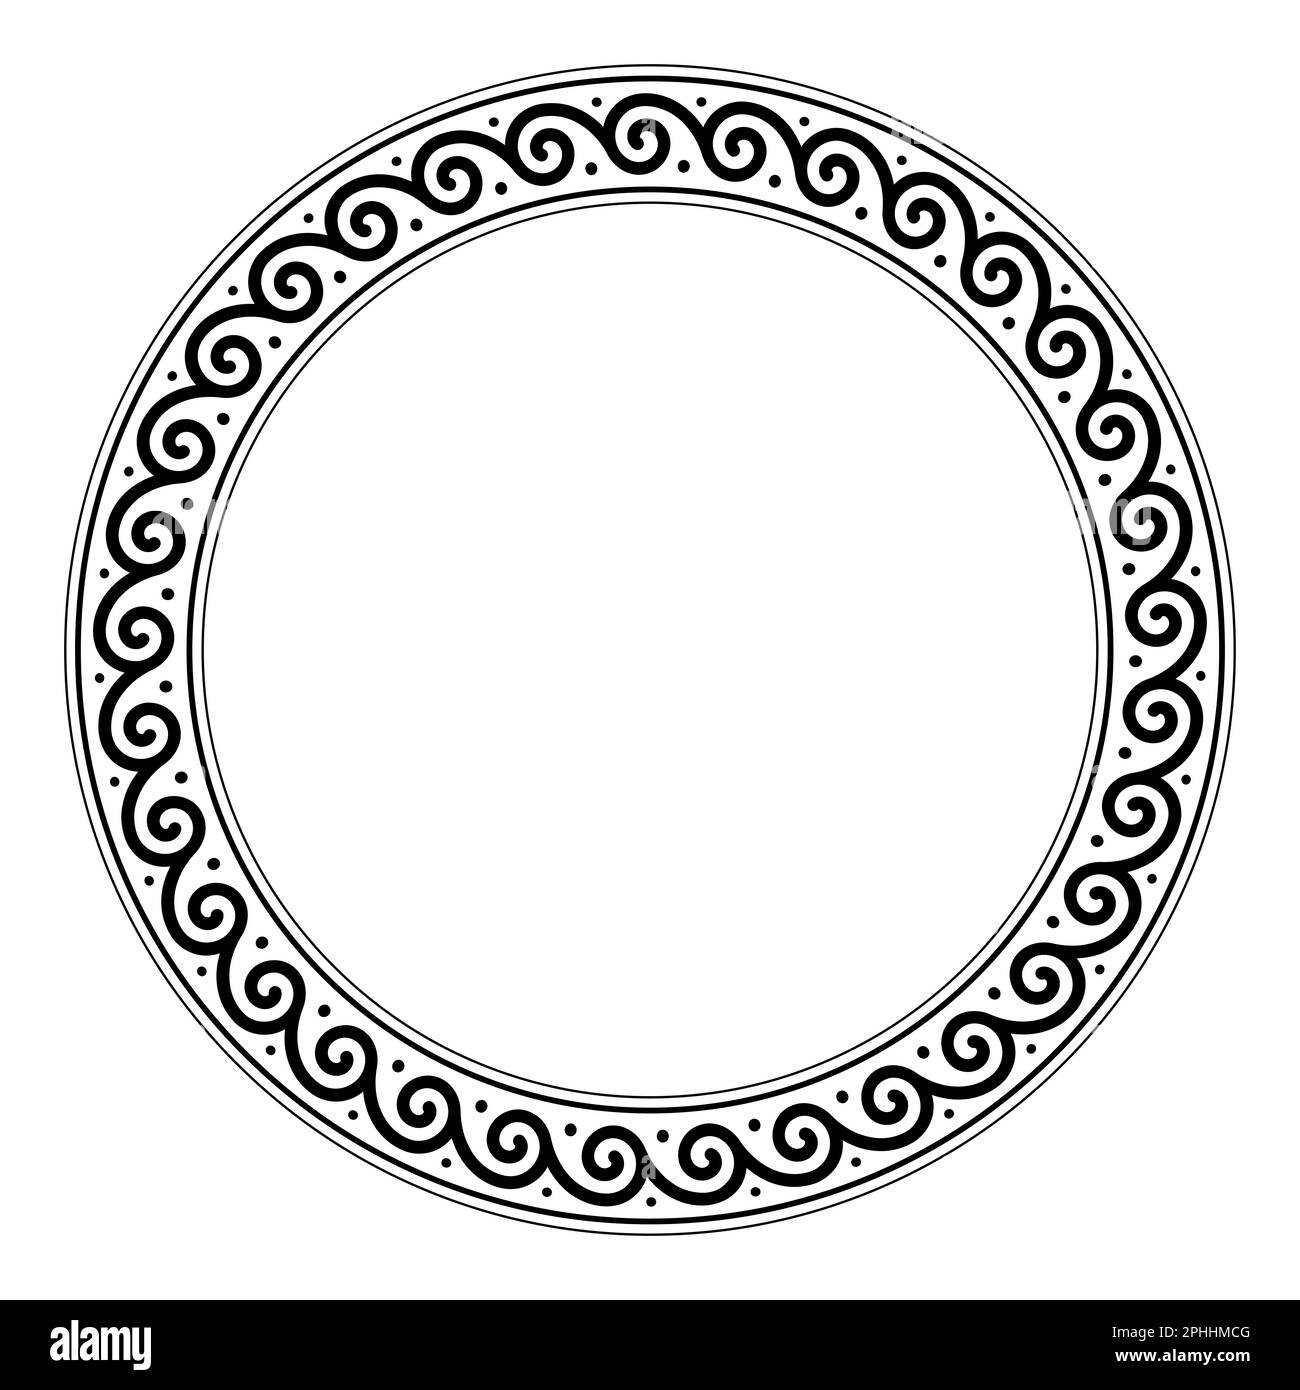 Répétition du motif en spirale, cadre en cercle. Bordure circulaire décorative avec spirales, reliées les unes aux autres dans une séquence sans fin. Motif grec ancien. Banque D'Images